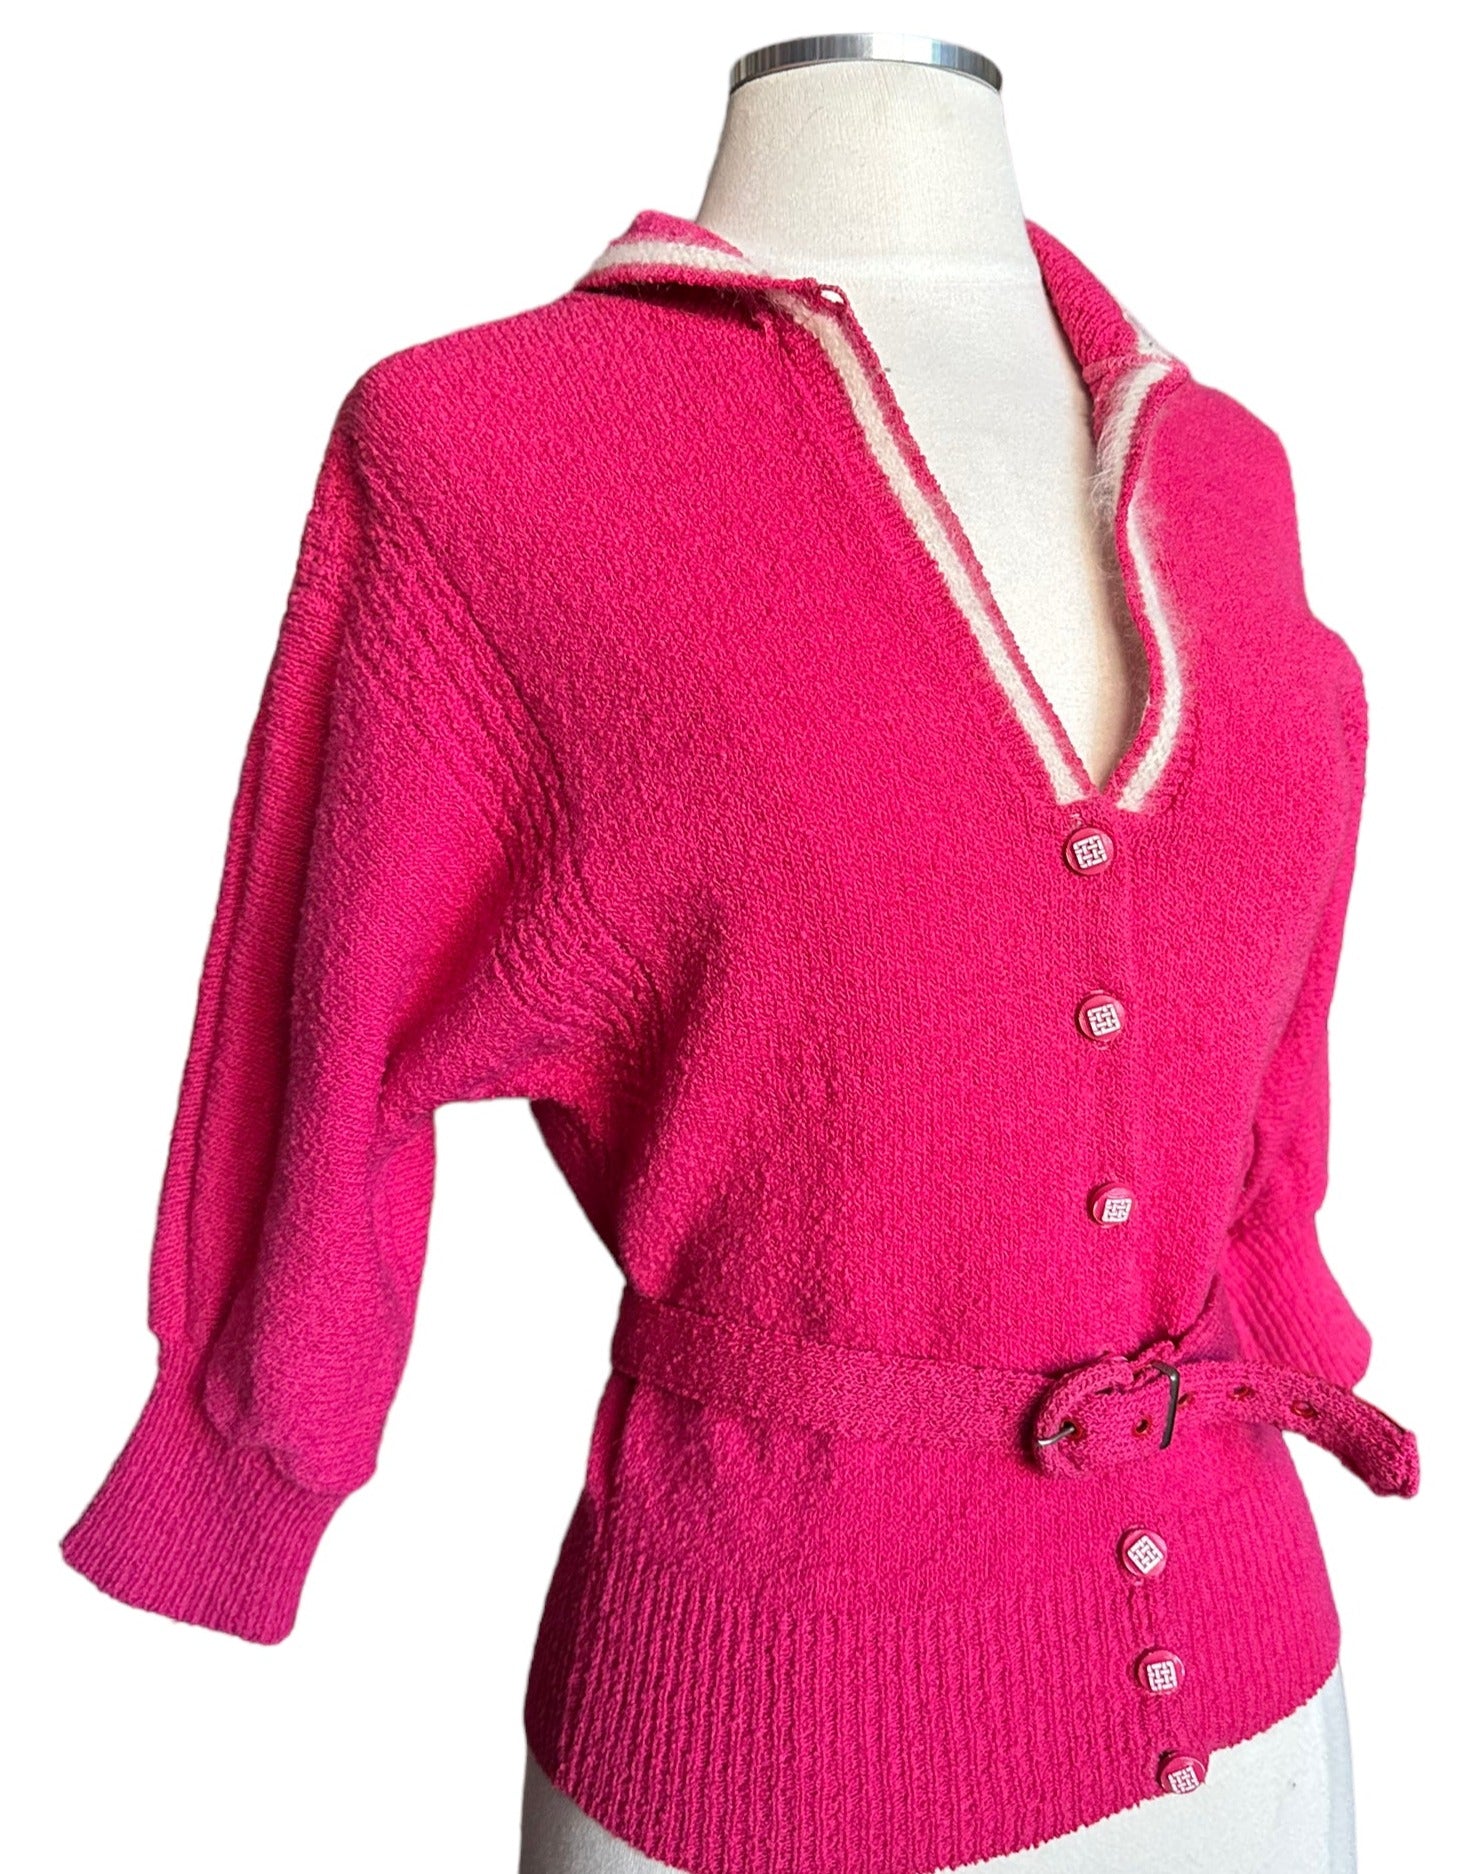 Side view Vintage 1950s Pink Sweater With Belt | Vintage Ladies Sweaters | Barn Owl Vintage Seattle